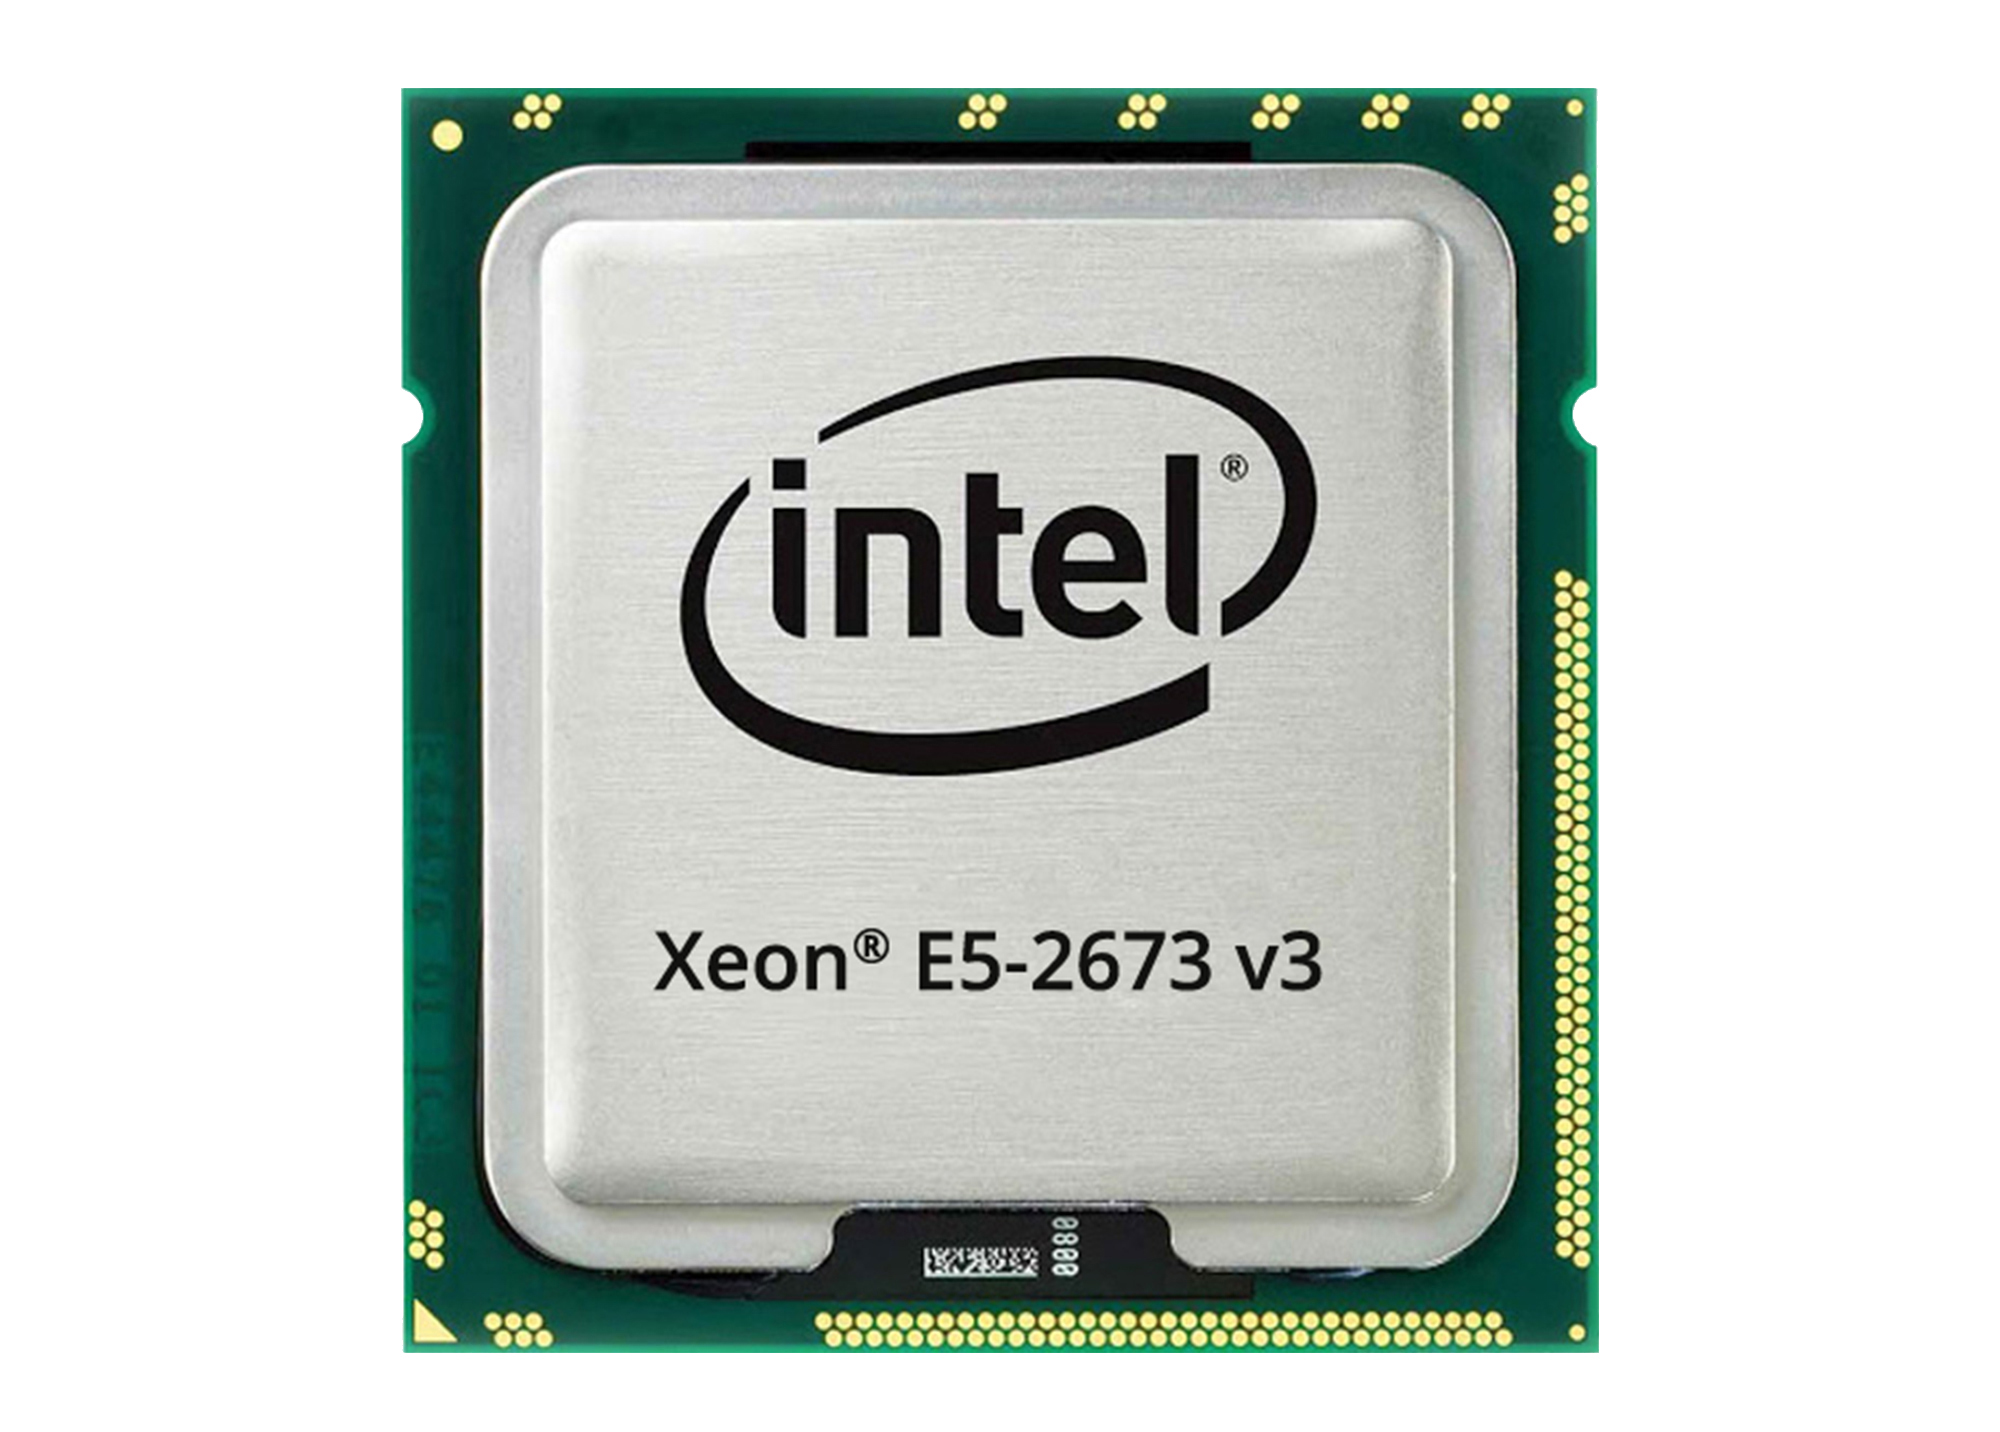 CPU Intel Xeon E5-2673 v3 (2.4GHz Turbo Up To 3.2GHz, 12 nhân 24 luồng, 30MB Cache, LGA 2011-3) chính hãng giá re